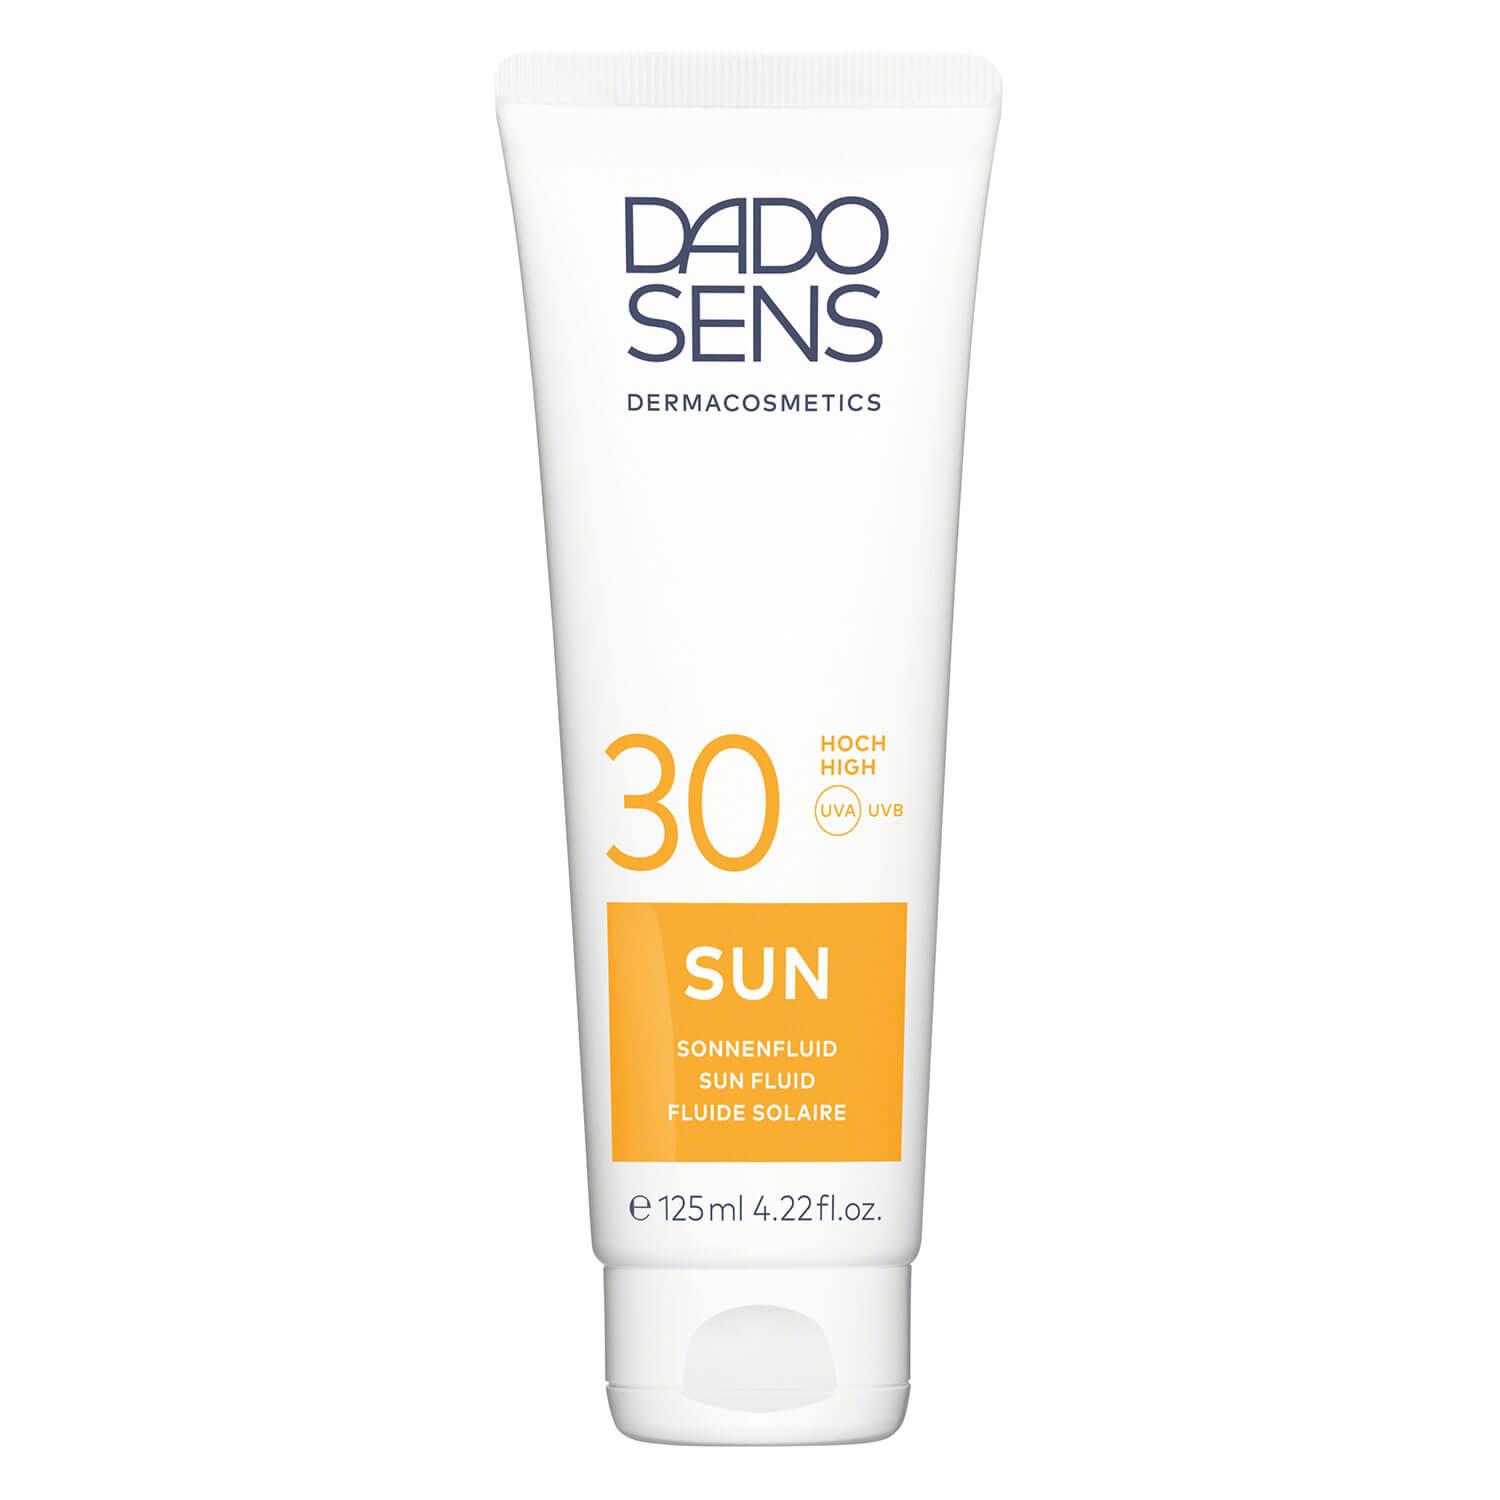 DADO SENS SUN - Sonnenfluid SPF 30